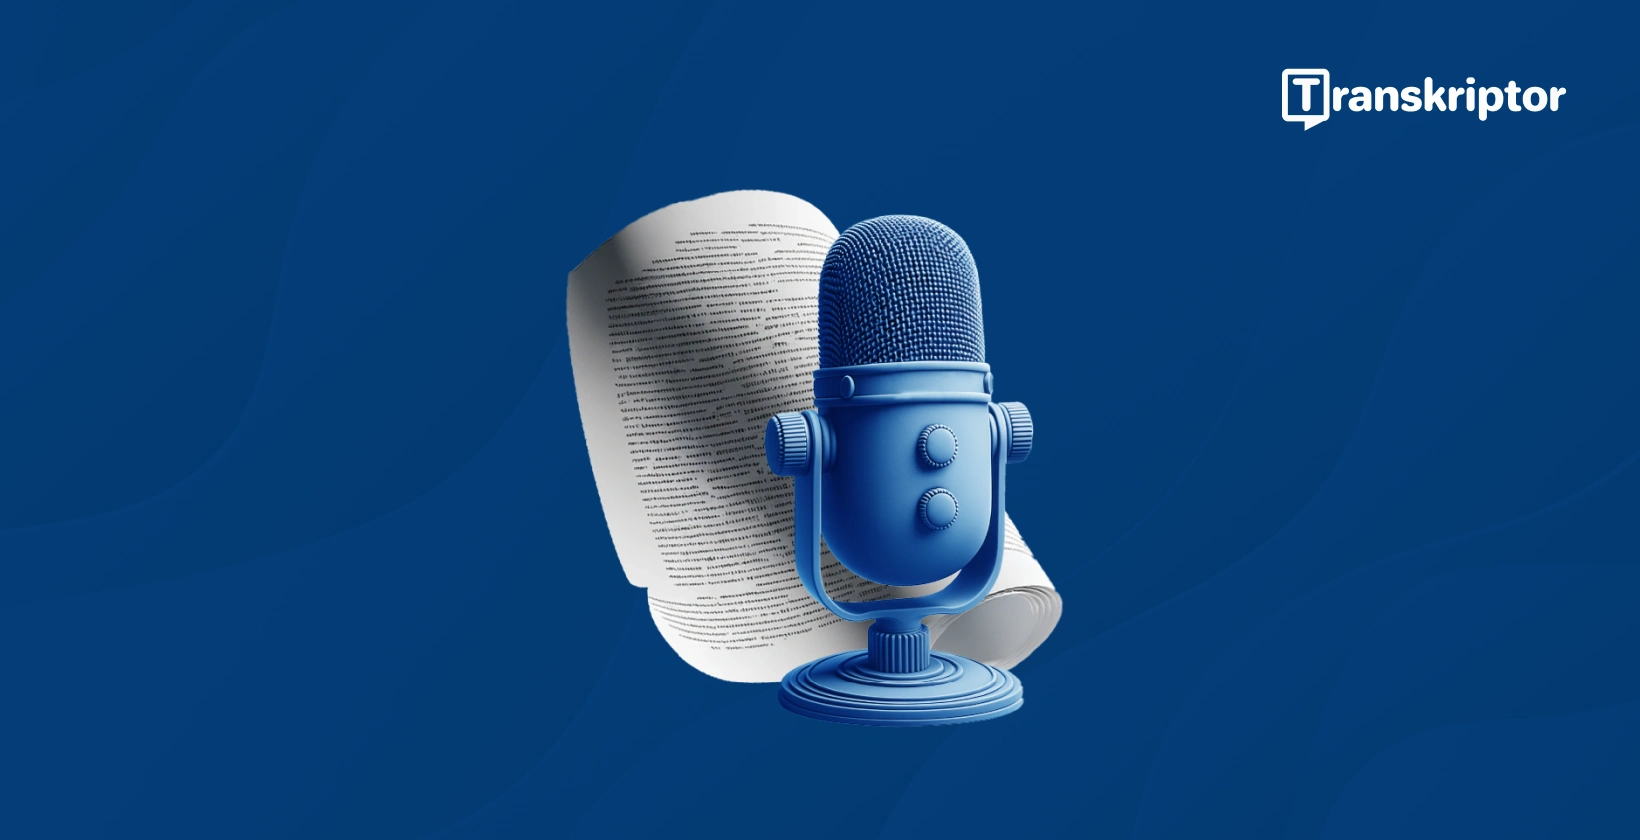 Transcrieți audio în text reprezentat de un microfon albastru și un document text.